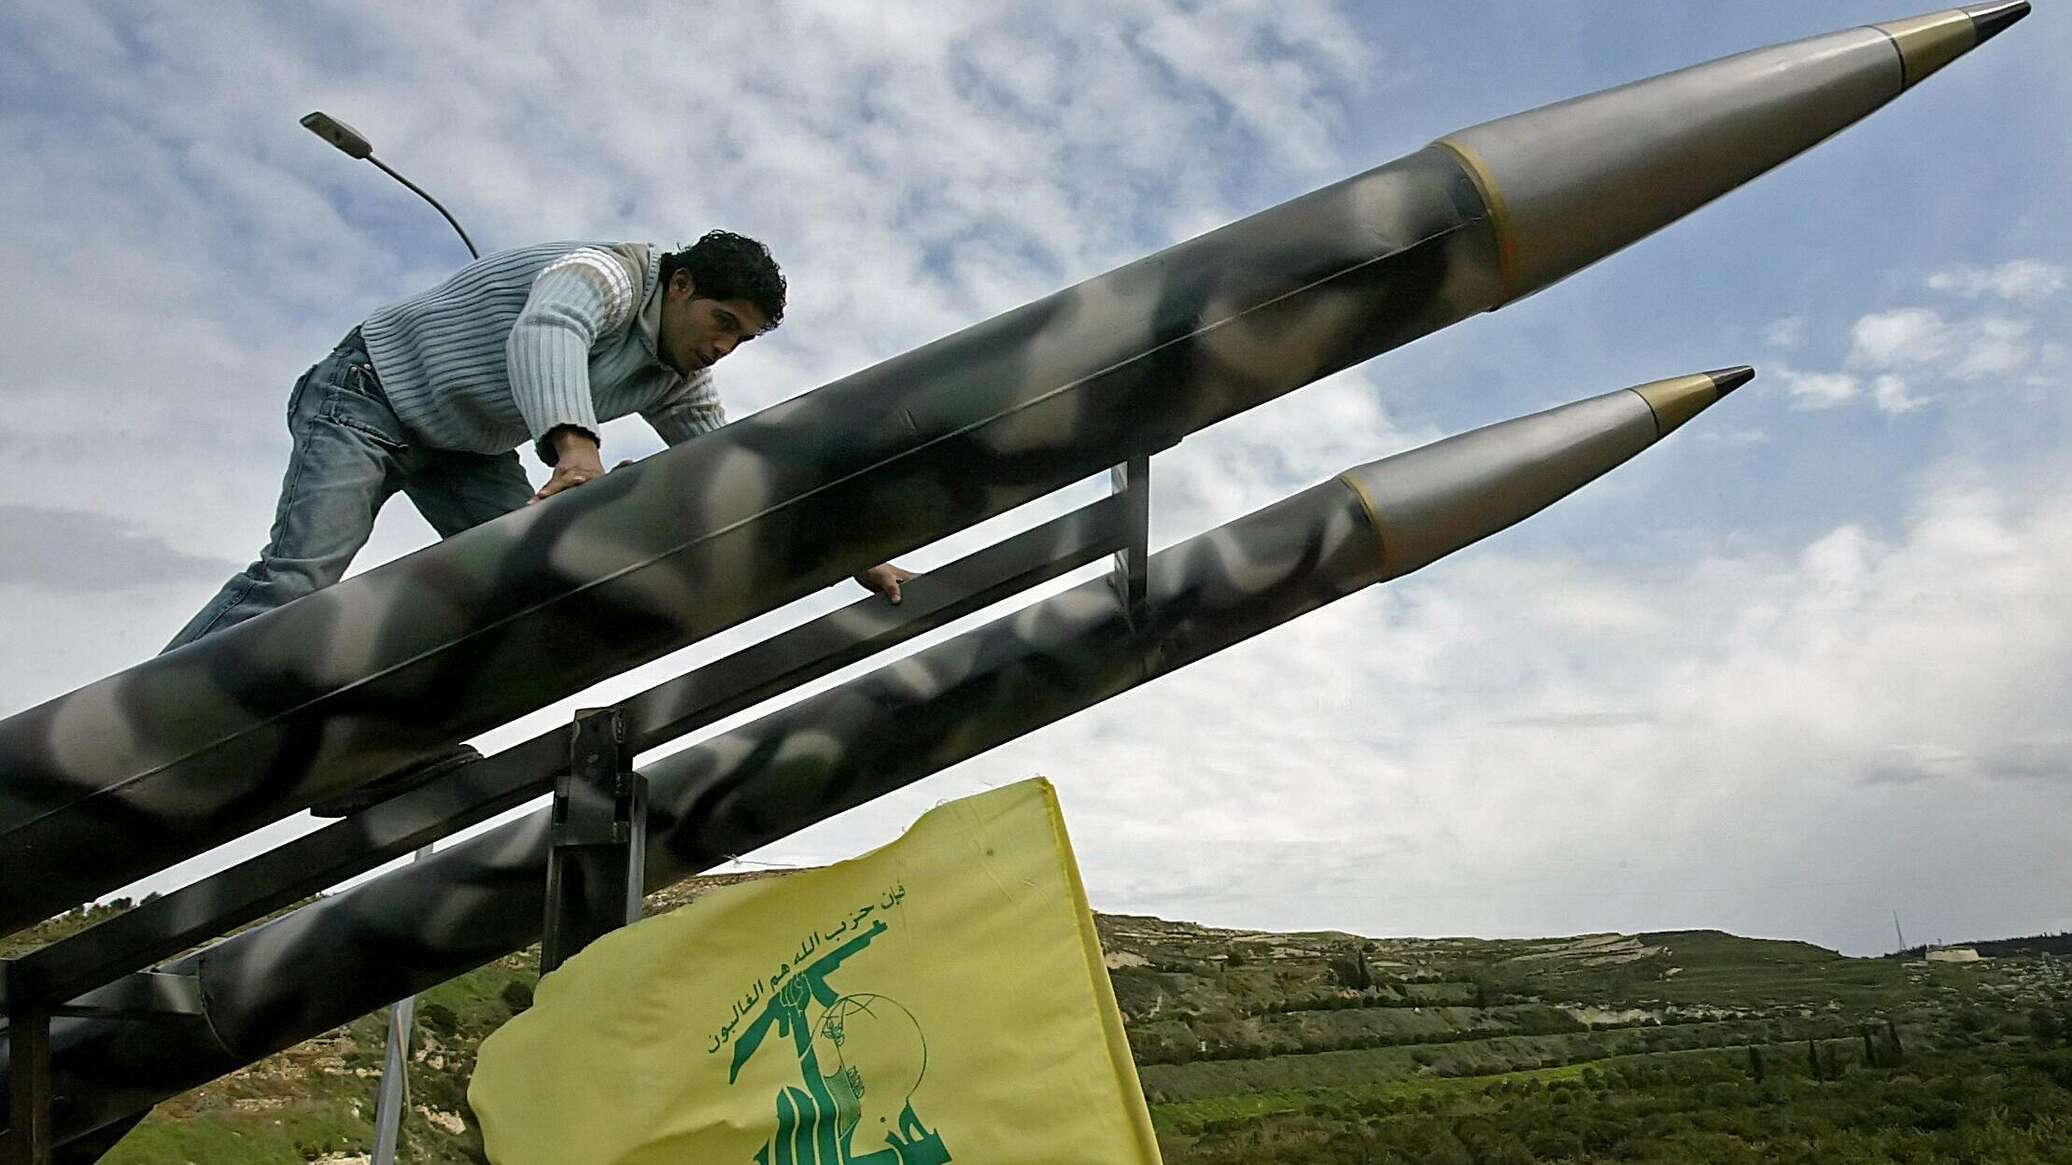 حزب الله يستهدف مواقع وتجمعاتٍ لجنود الاحتلال الإسرائيلي بالصواريخ